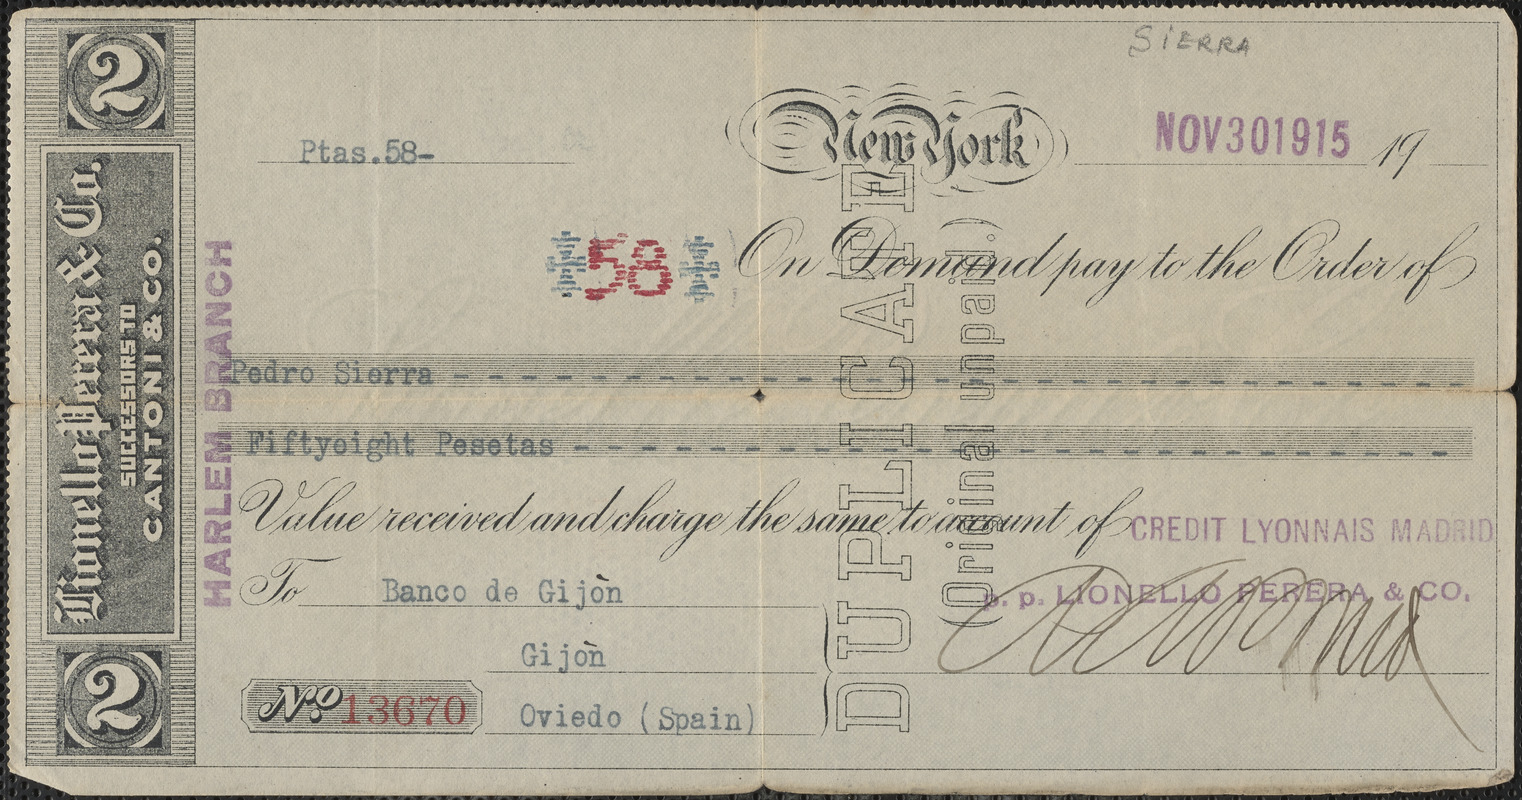 Pedro Sierra bank note, New York, N. Y., November 30, 1915